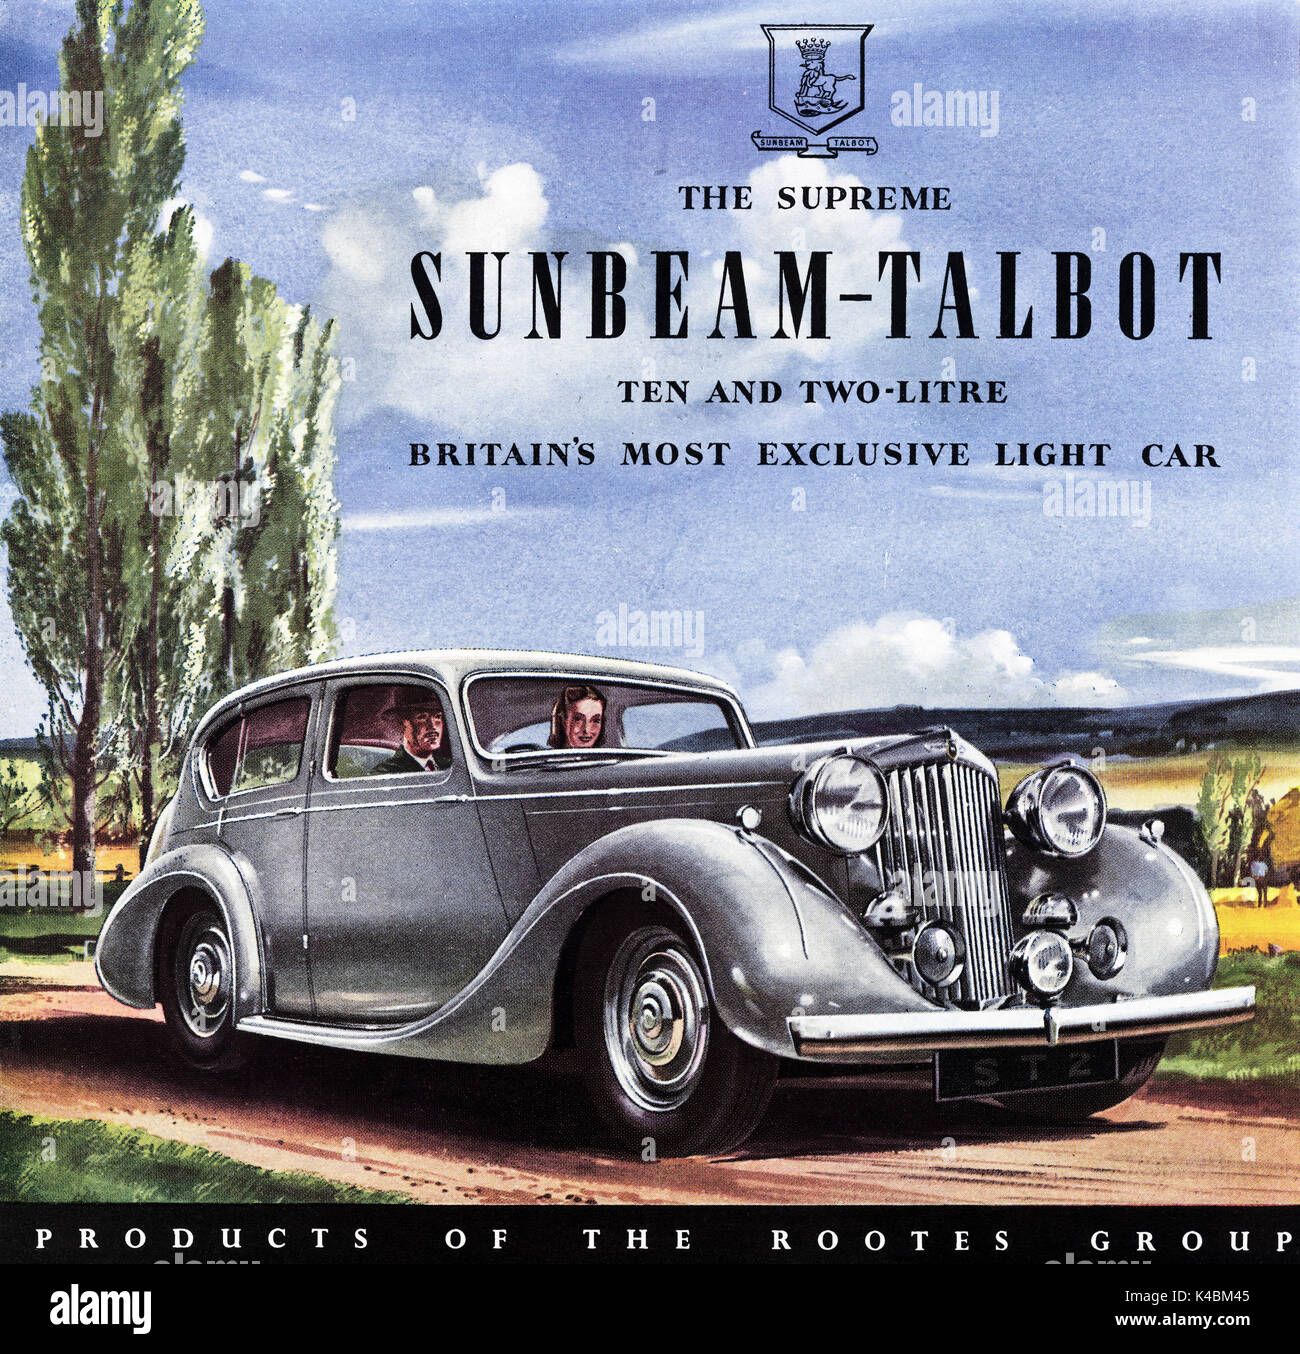 1940s vecchio vintage originale pubblicità pubblicità Sunbeam-Talbot dal gruppo Rootes in magazine circa 1947 quando i materiali di consumo sono state ancora limitato sotto post-razionamento di guerra Foto Stock